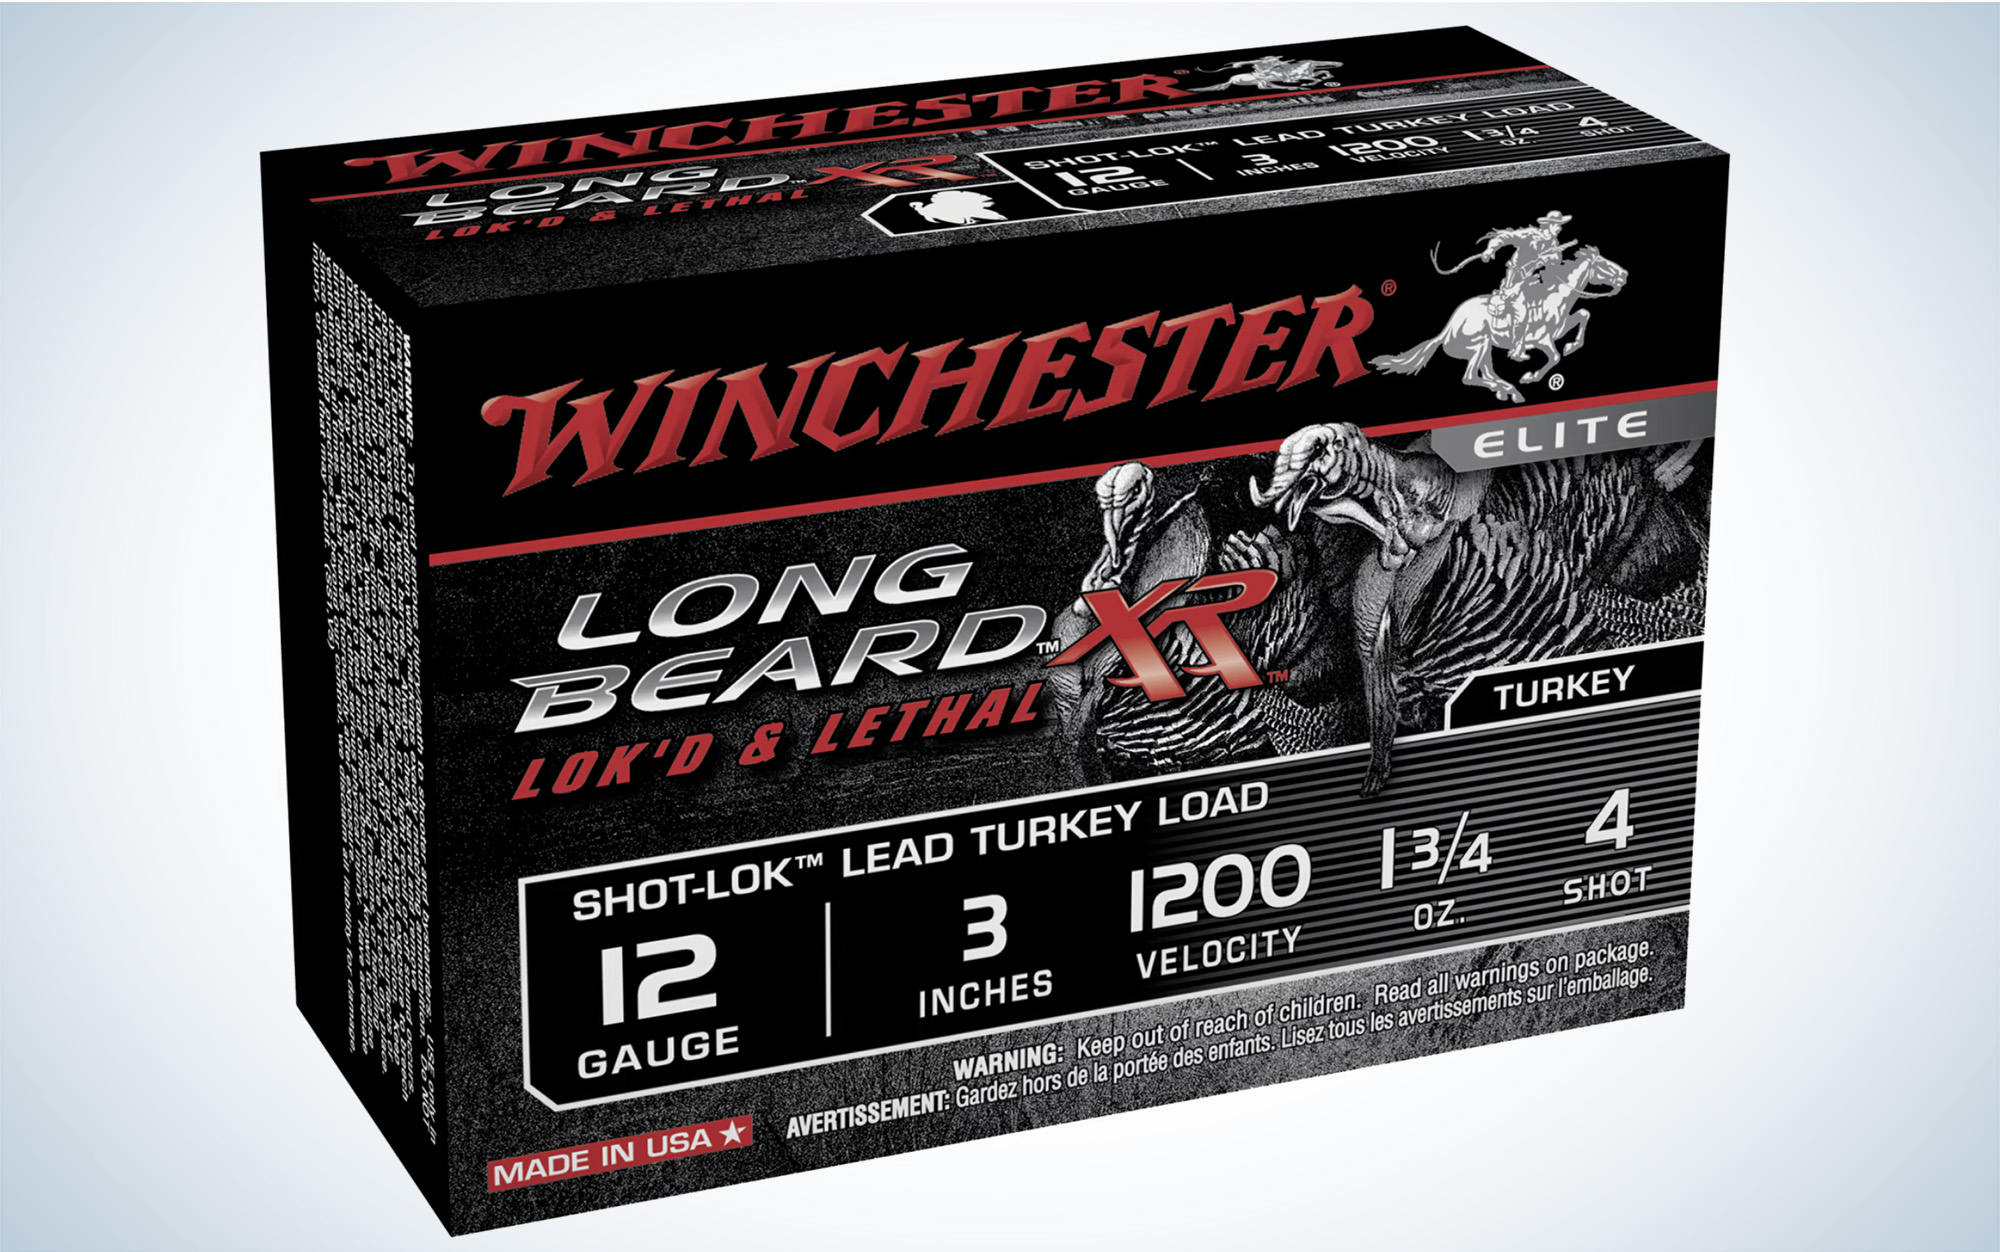 The Winchester Long Beard XR Turkey Shotshells is one of the best turkey loads.